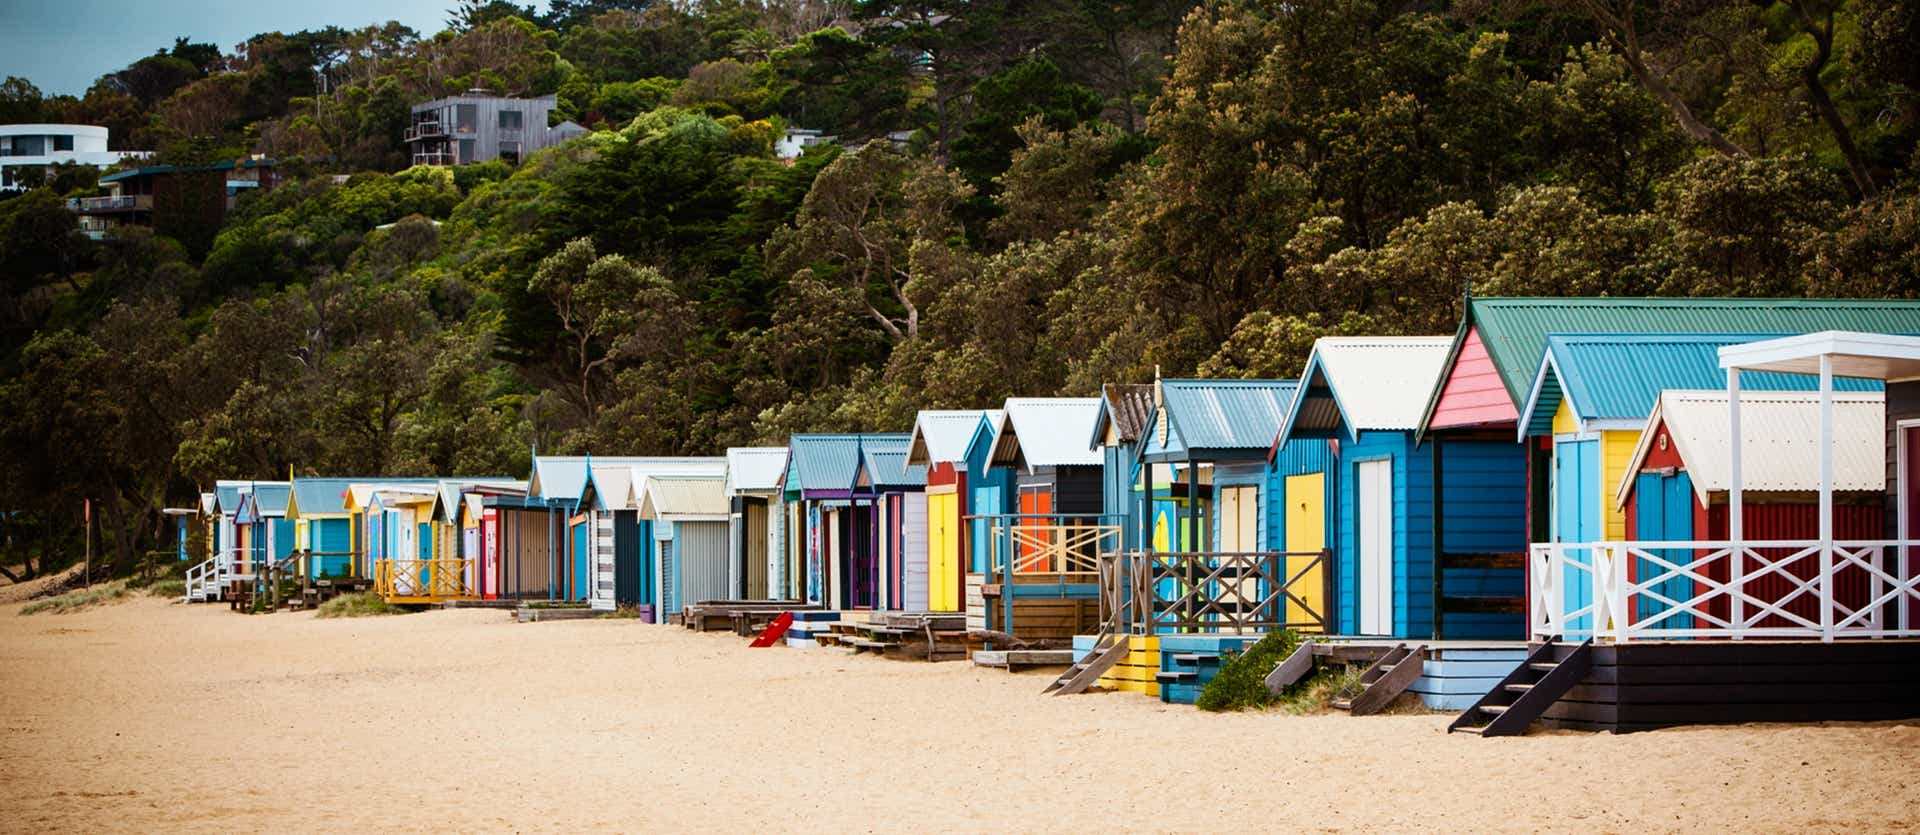 Colorful Beach Cabins <span class="iconos separador"></span> Melbourne